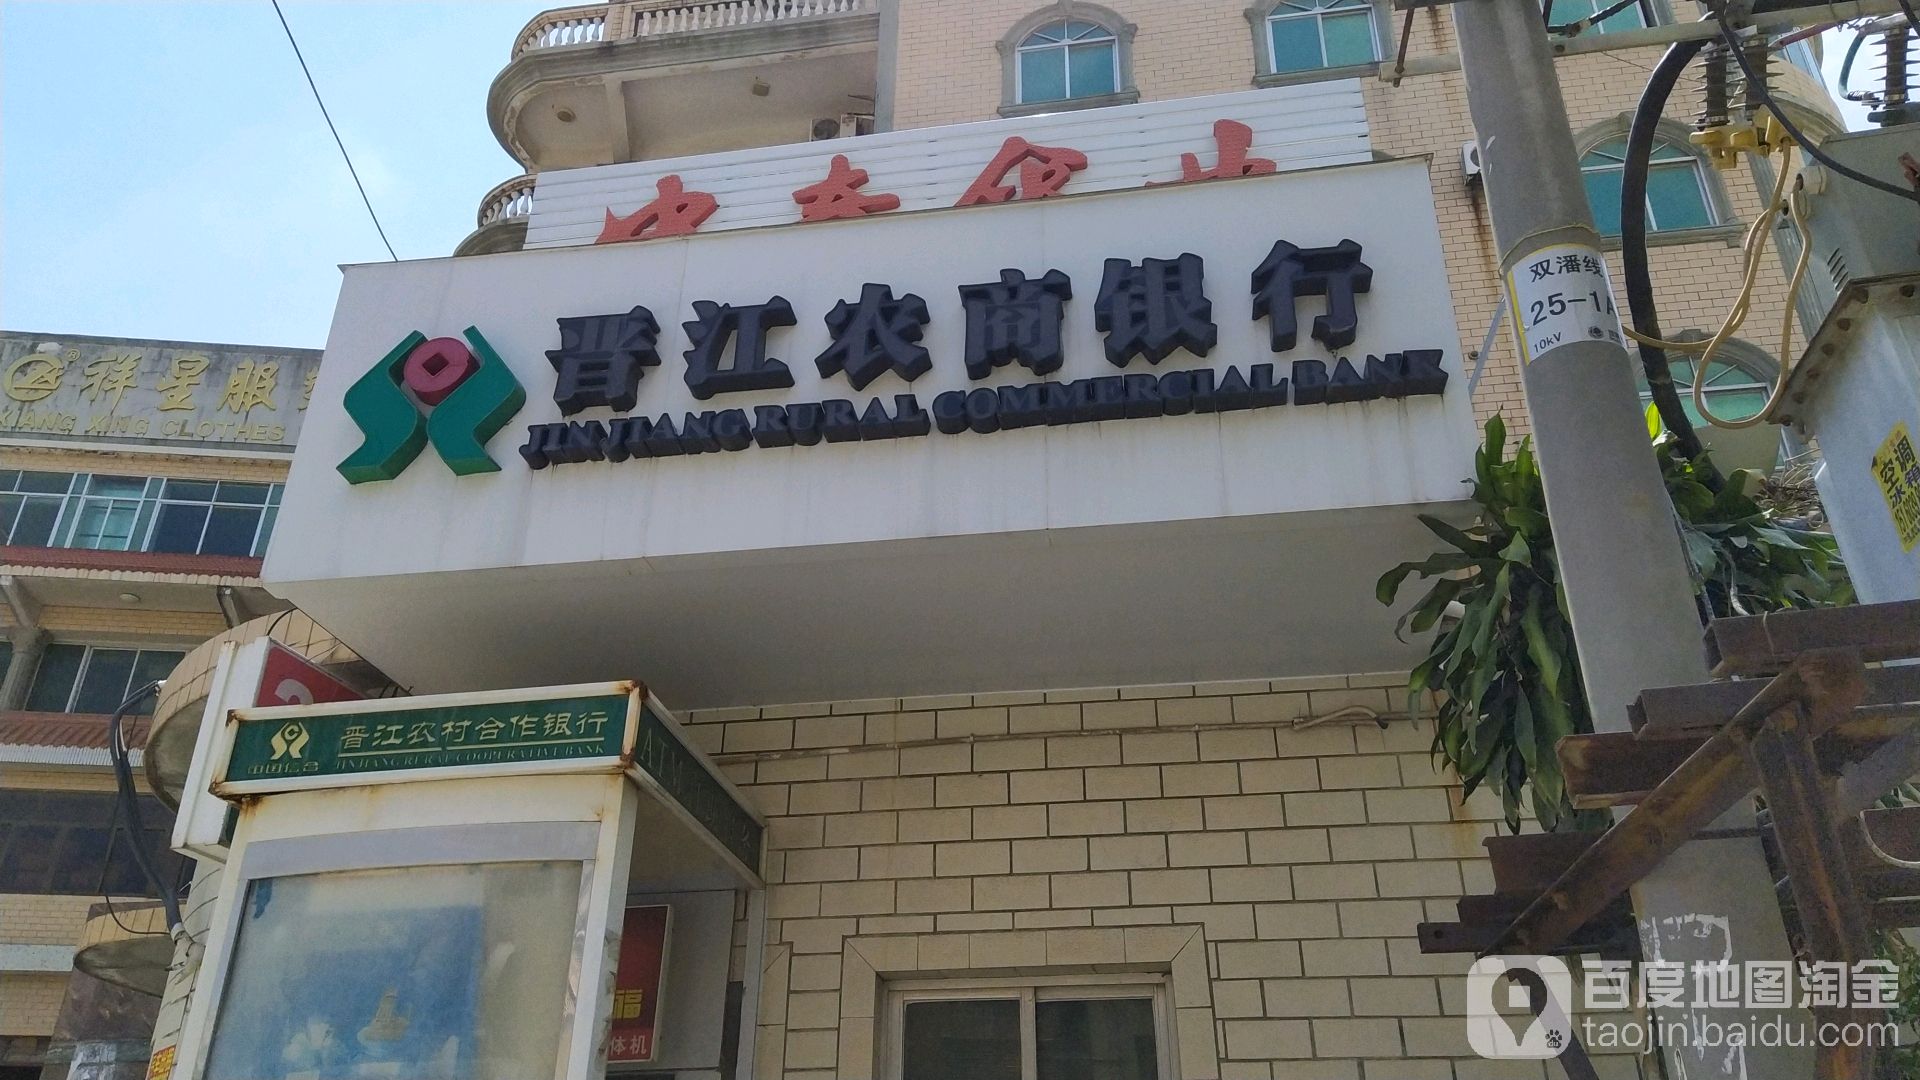 晋江农村商业银行ATM